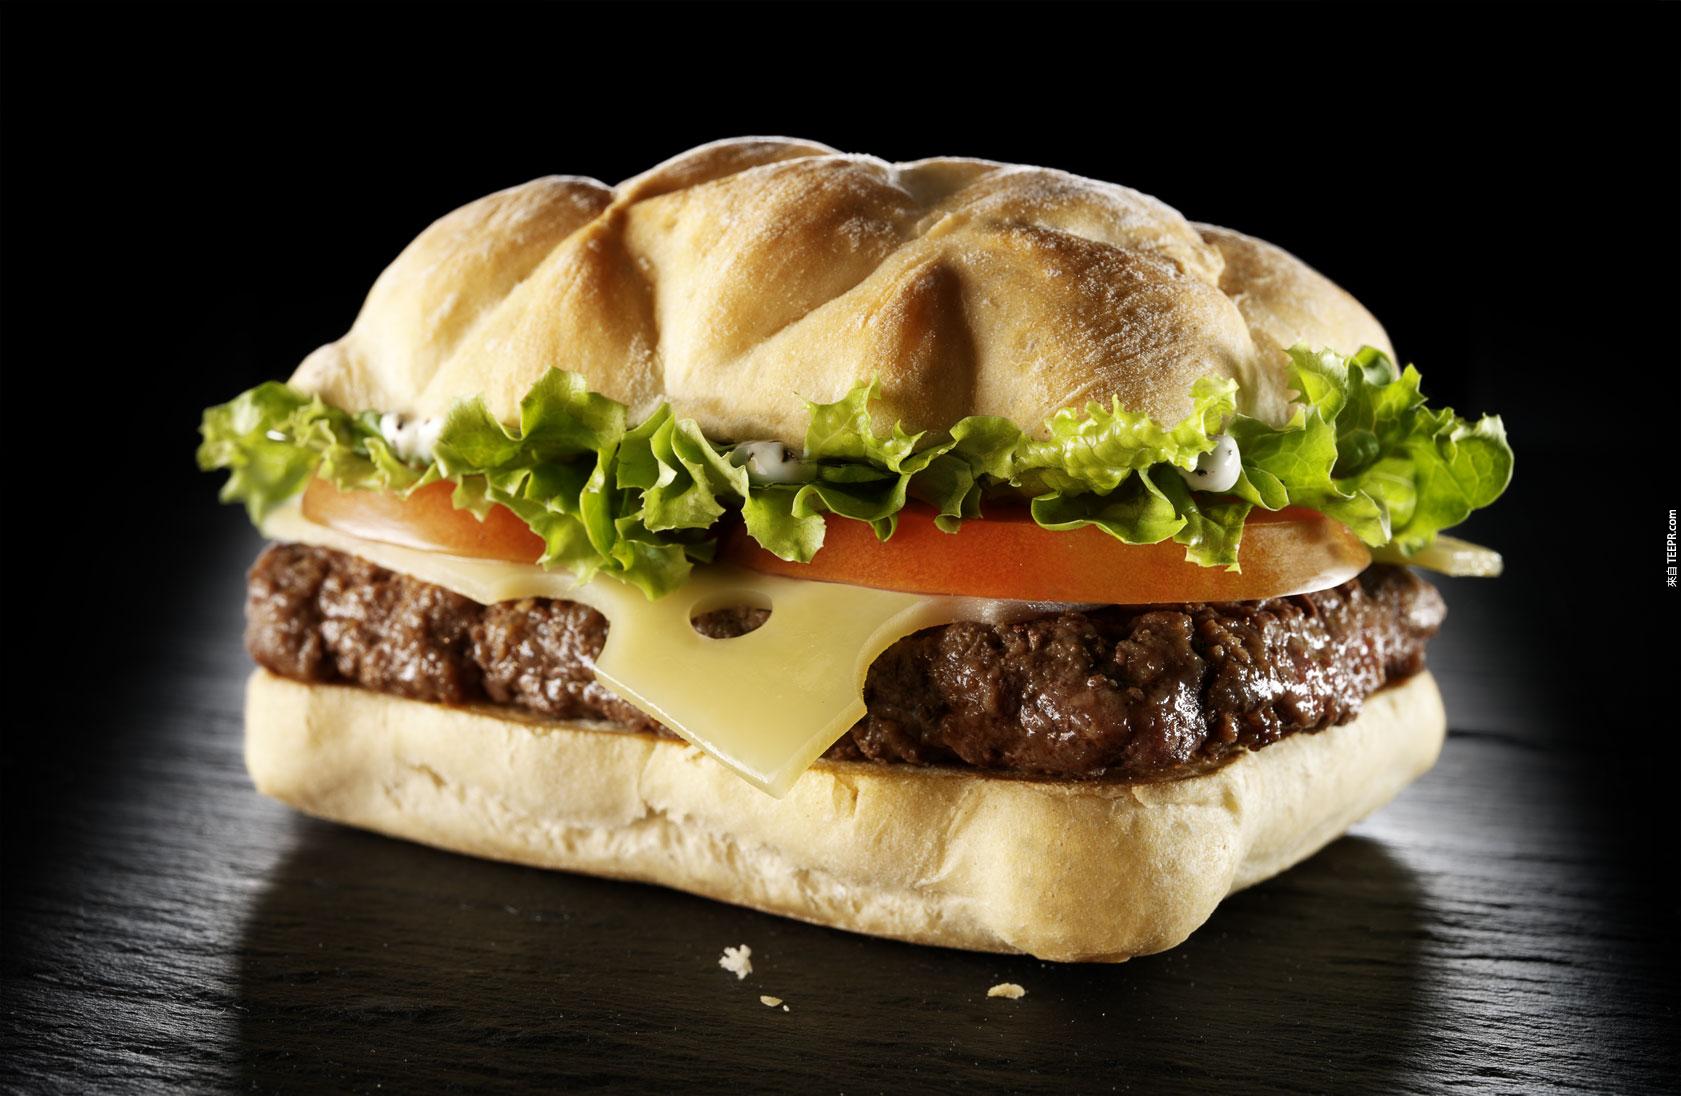 7. 法國漢堡則是特地選用了義式脆皮麵包來取代原本法式漢堡的小圓麵包，而內層則更添加了一片香濃的瑞士愛摩塔乳酪。